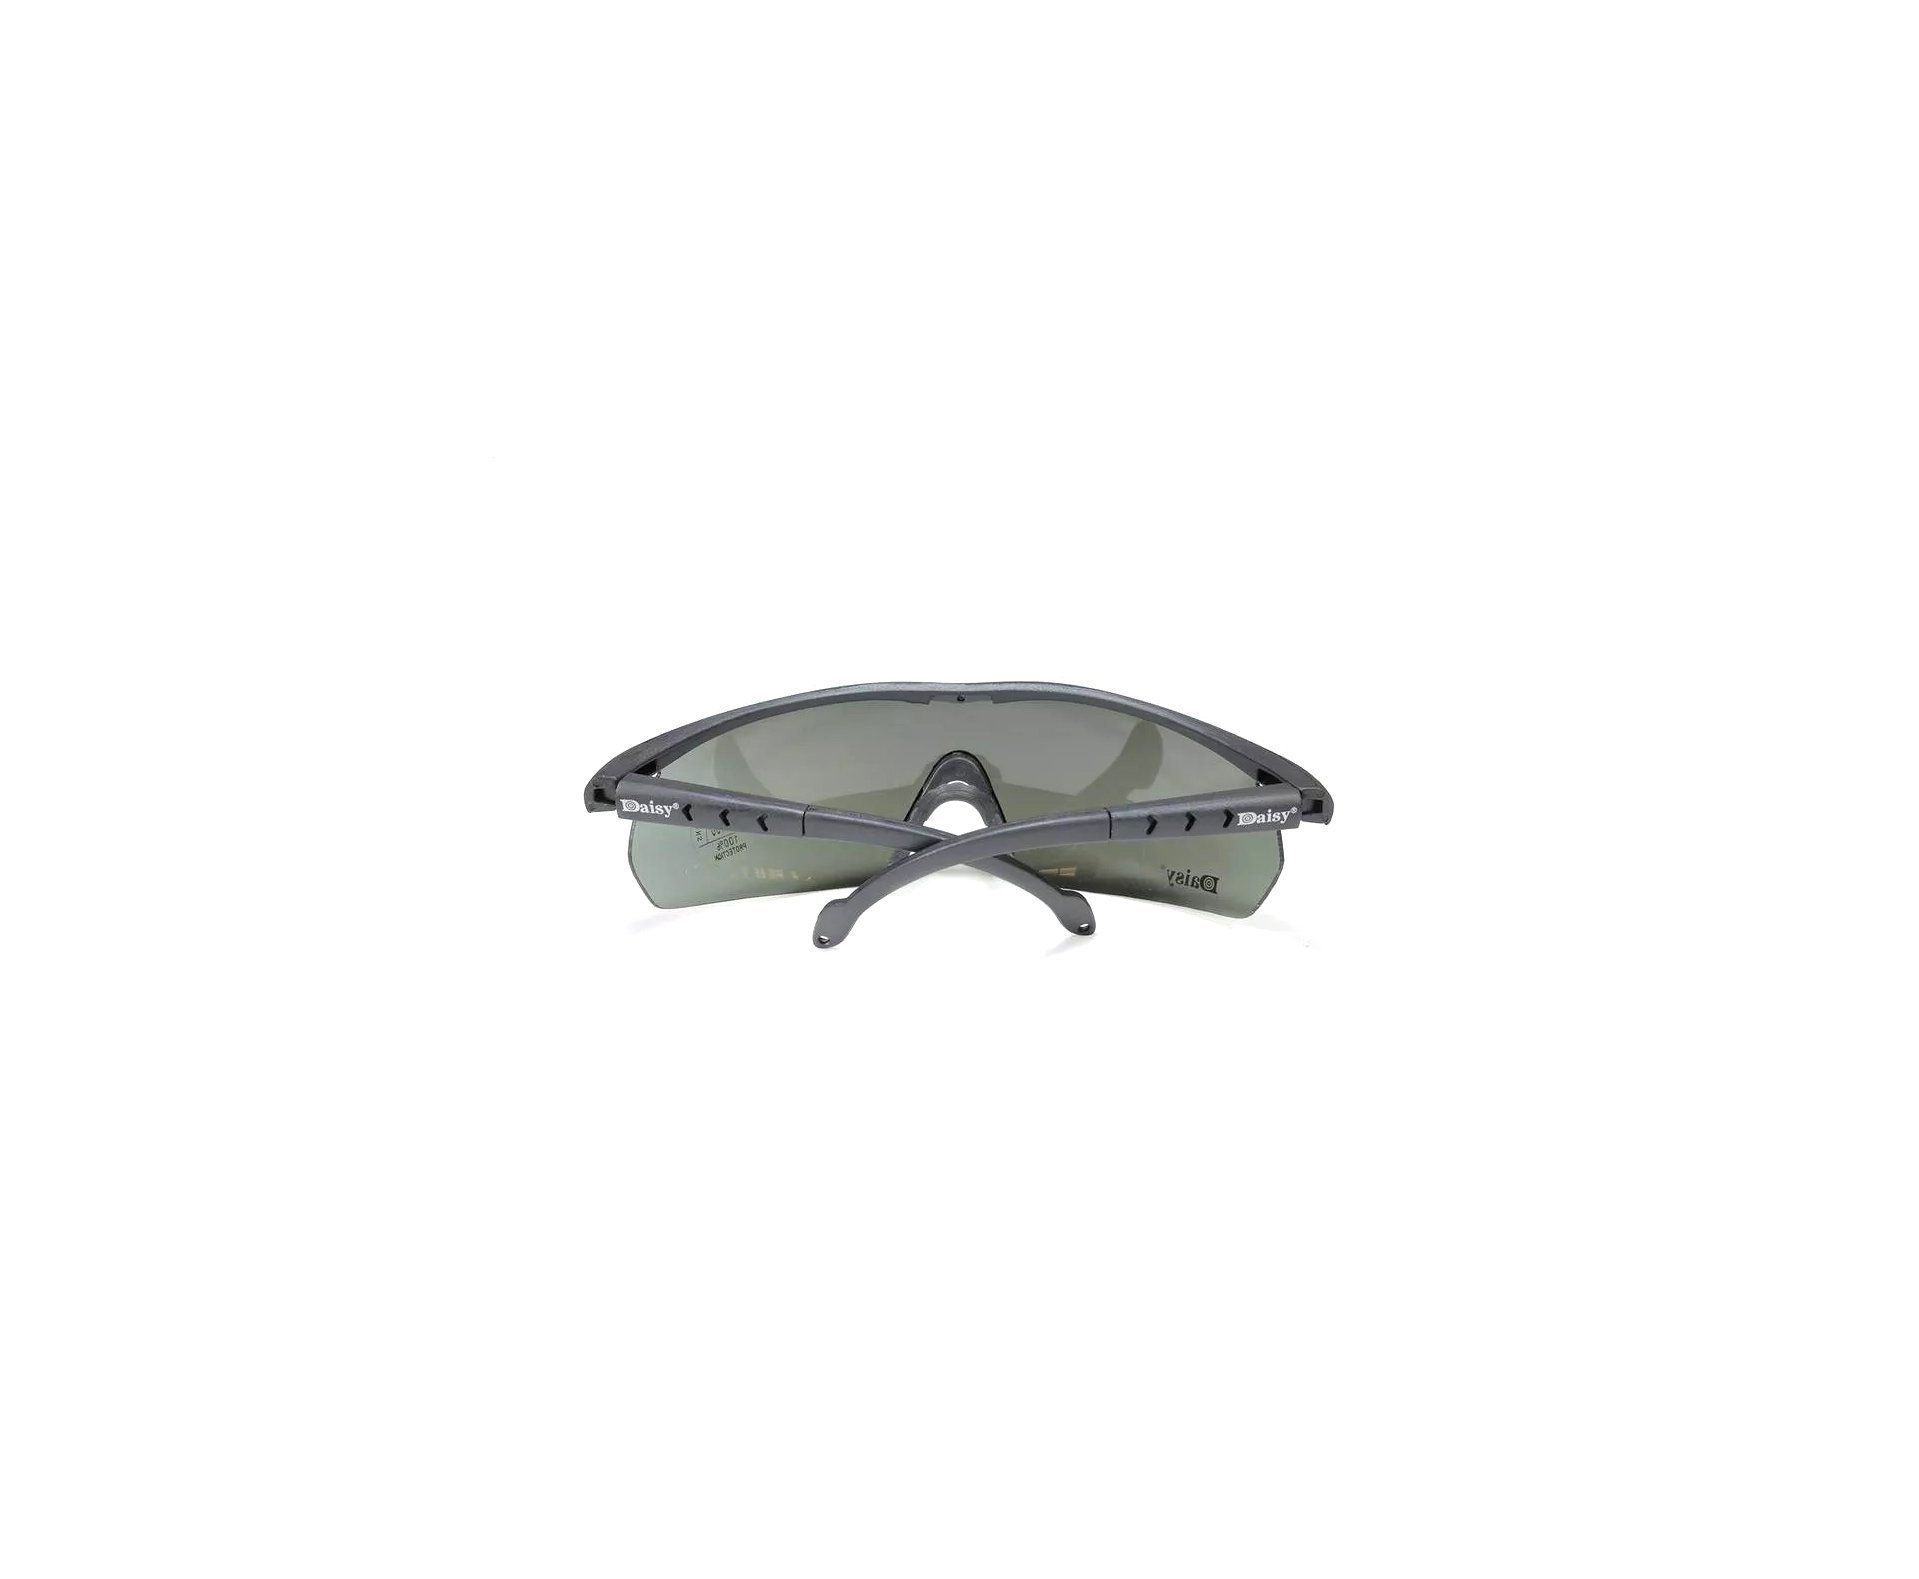 óculos De Segurança Para Tiro Esportivo Daisy C2 04 Lentes - Quick Shot